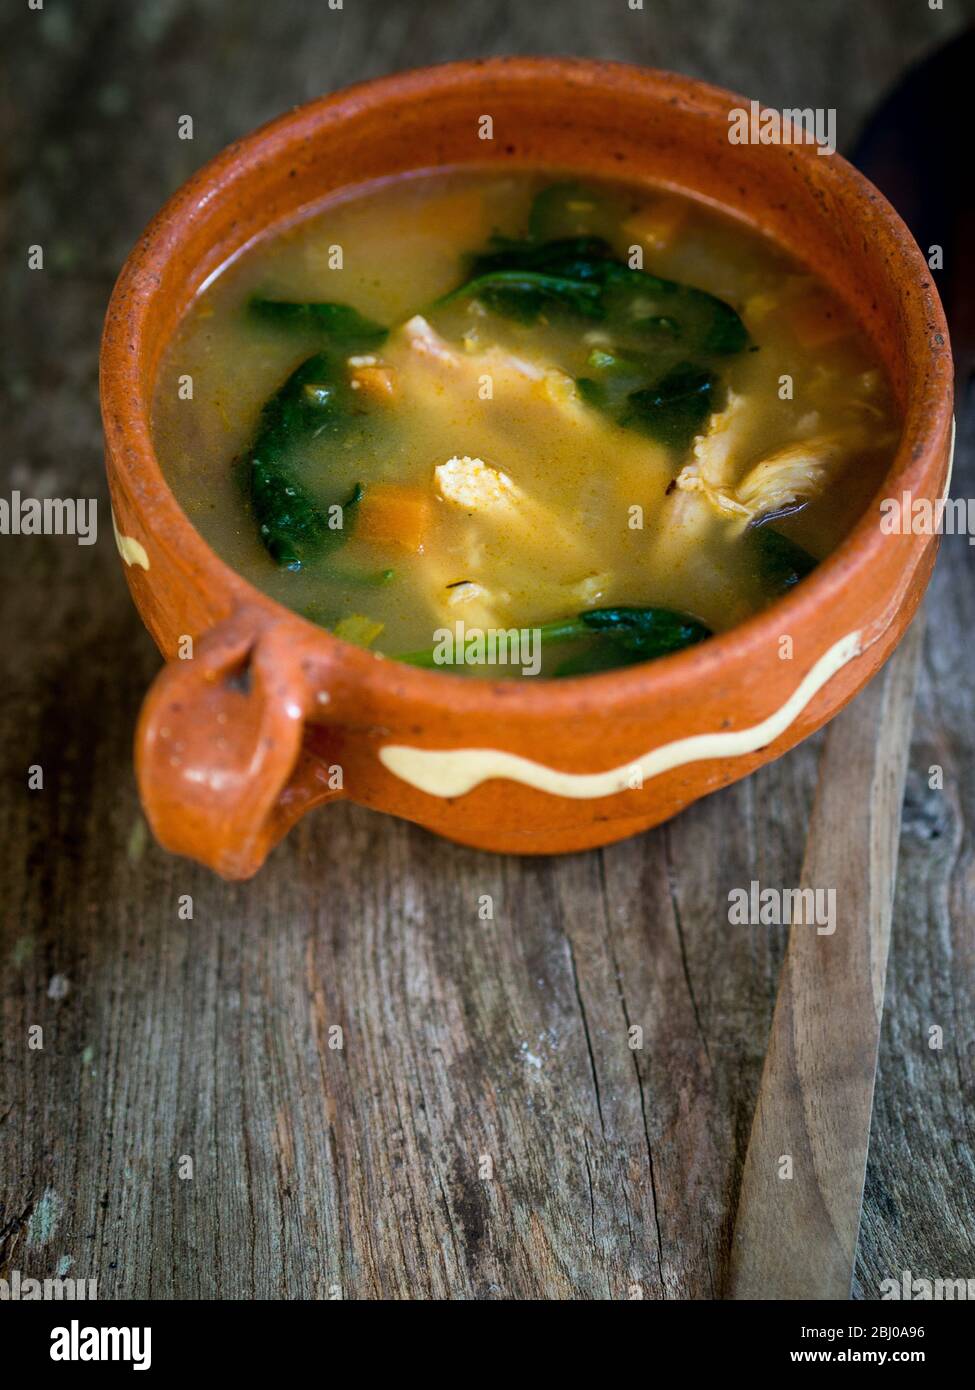 Komplette Mahlzeit Suppe von Huhn, Chorizo-Wurst und Gemüse mit braunem Reis, Linsen und Spinat, in blass blau Schüssel serviert Stockfoto